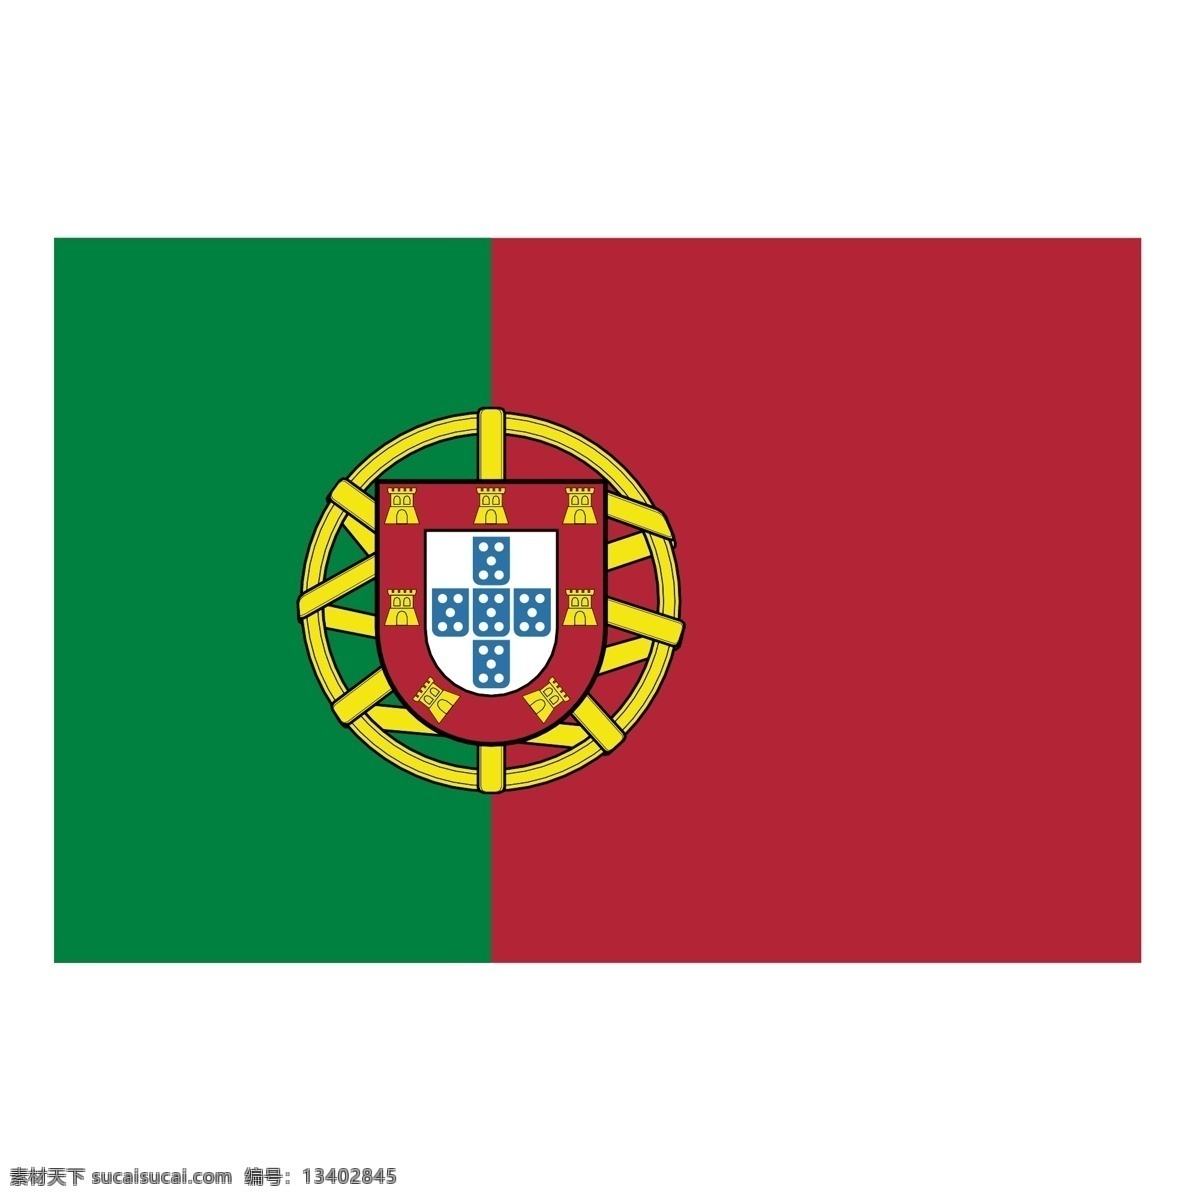 葡萄牙1 矢量艺术 葡萄牙 国旗 矢量 埃斯库多 免费 艺术 标志 夹 欧洲杯 2004 欧元 自由 赛车葡萄牙 向量 矢量图 建筑家居